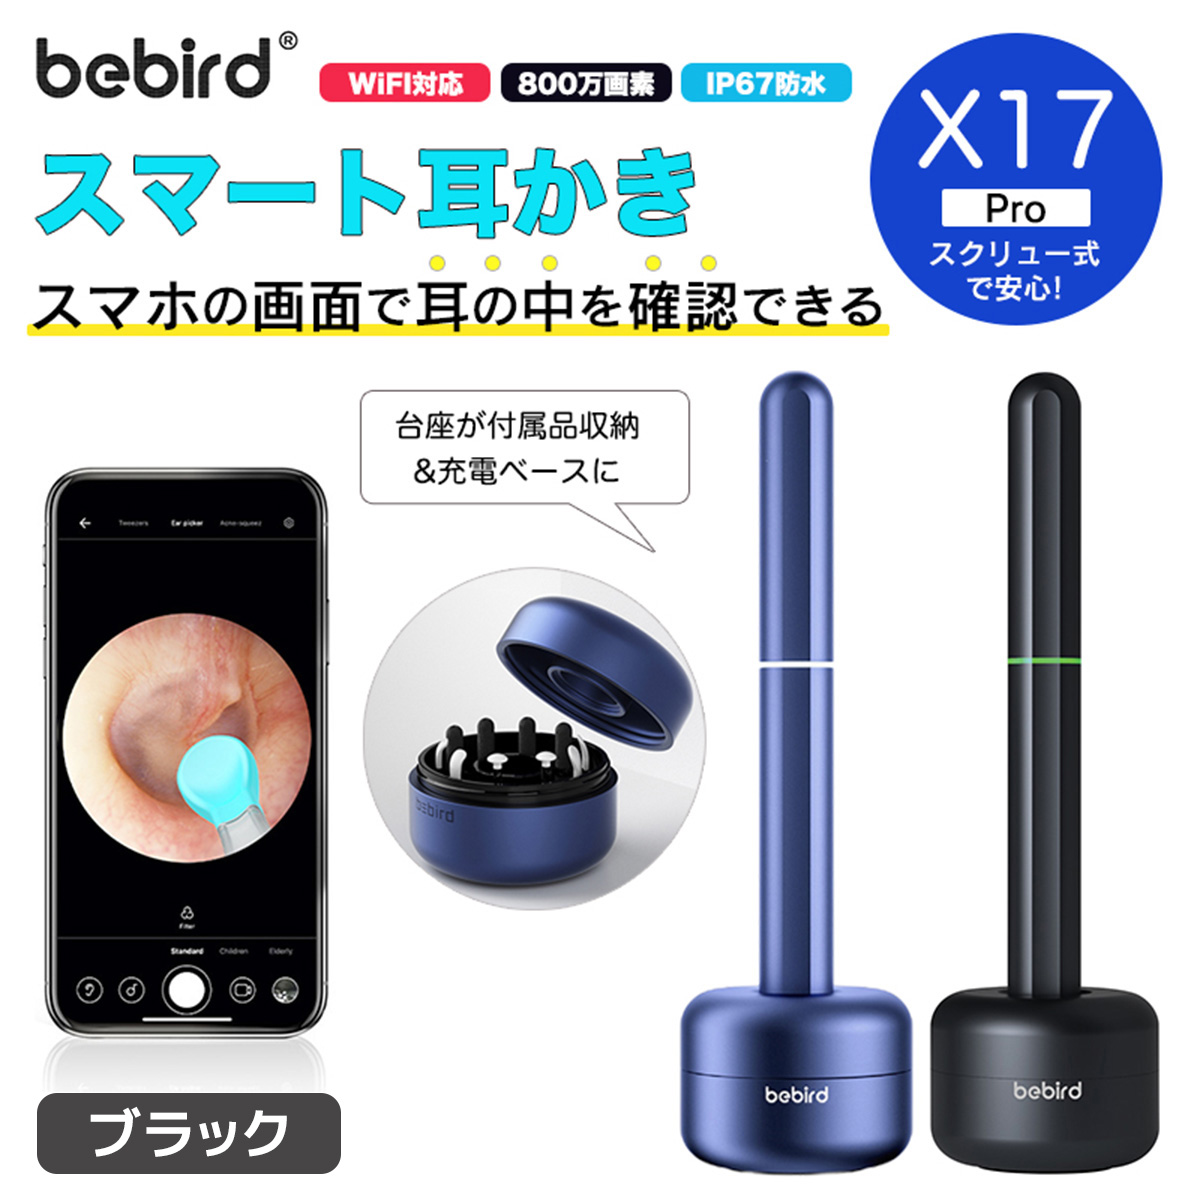 【在庫品/即納】bebird スマート耳かき X17 Pro ブラック